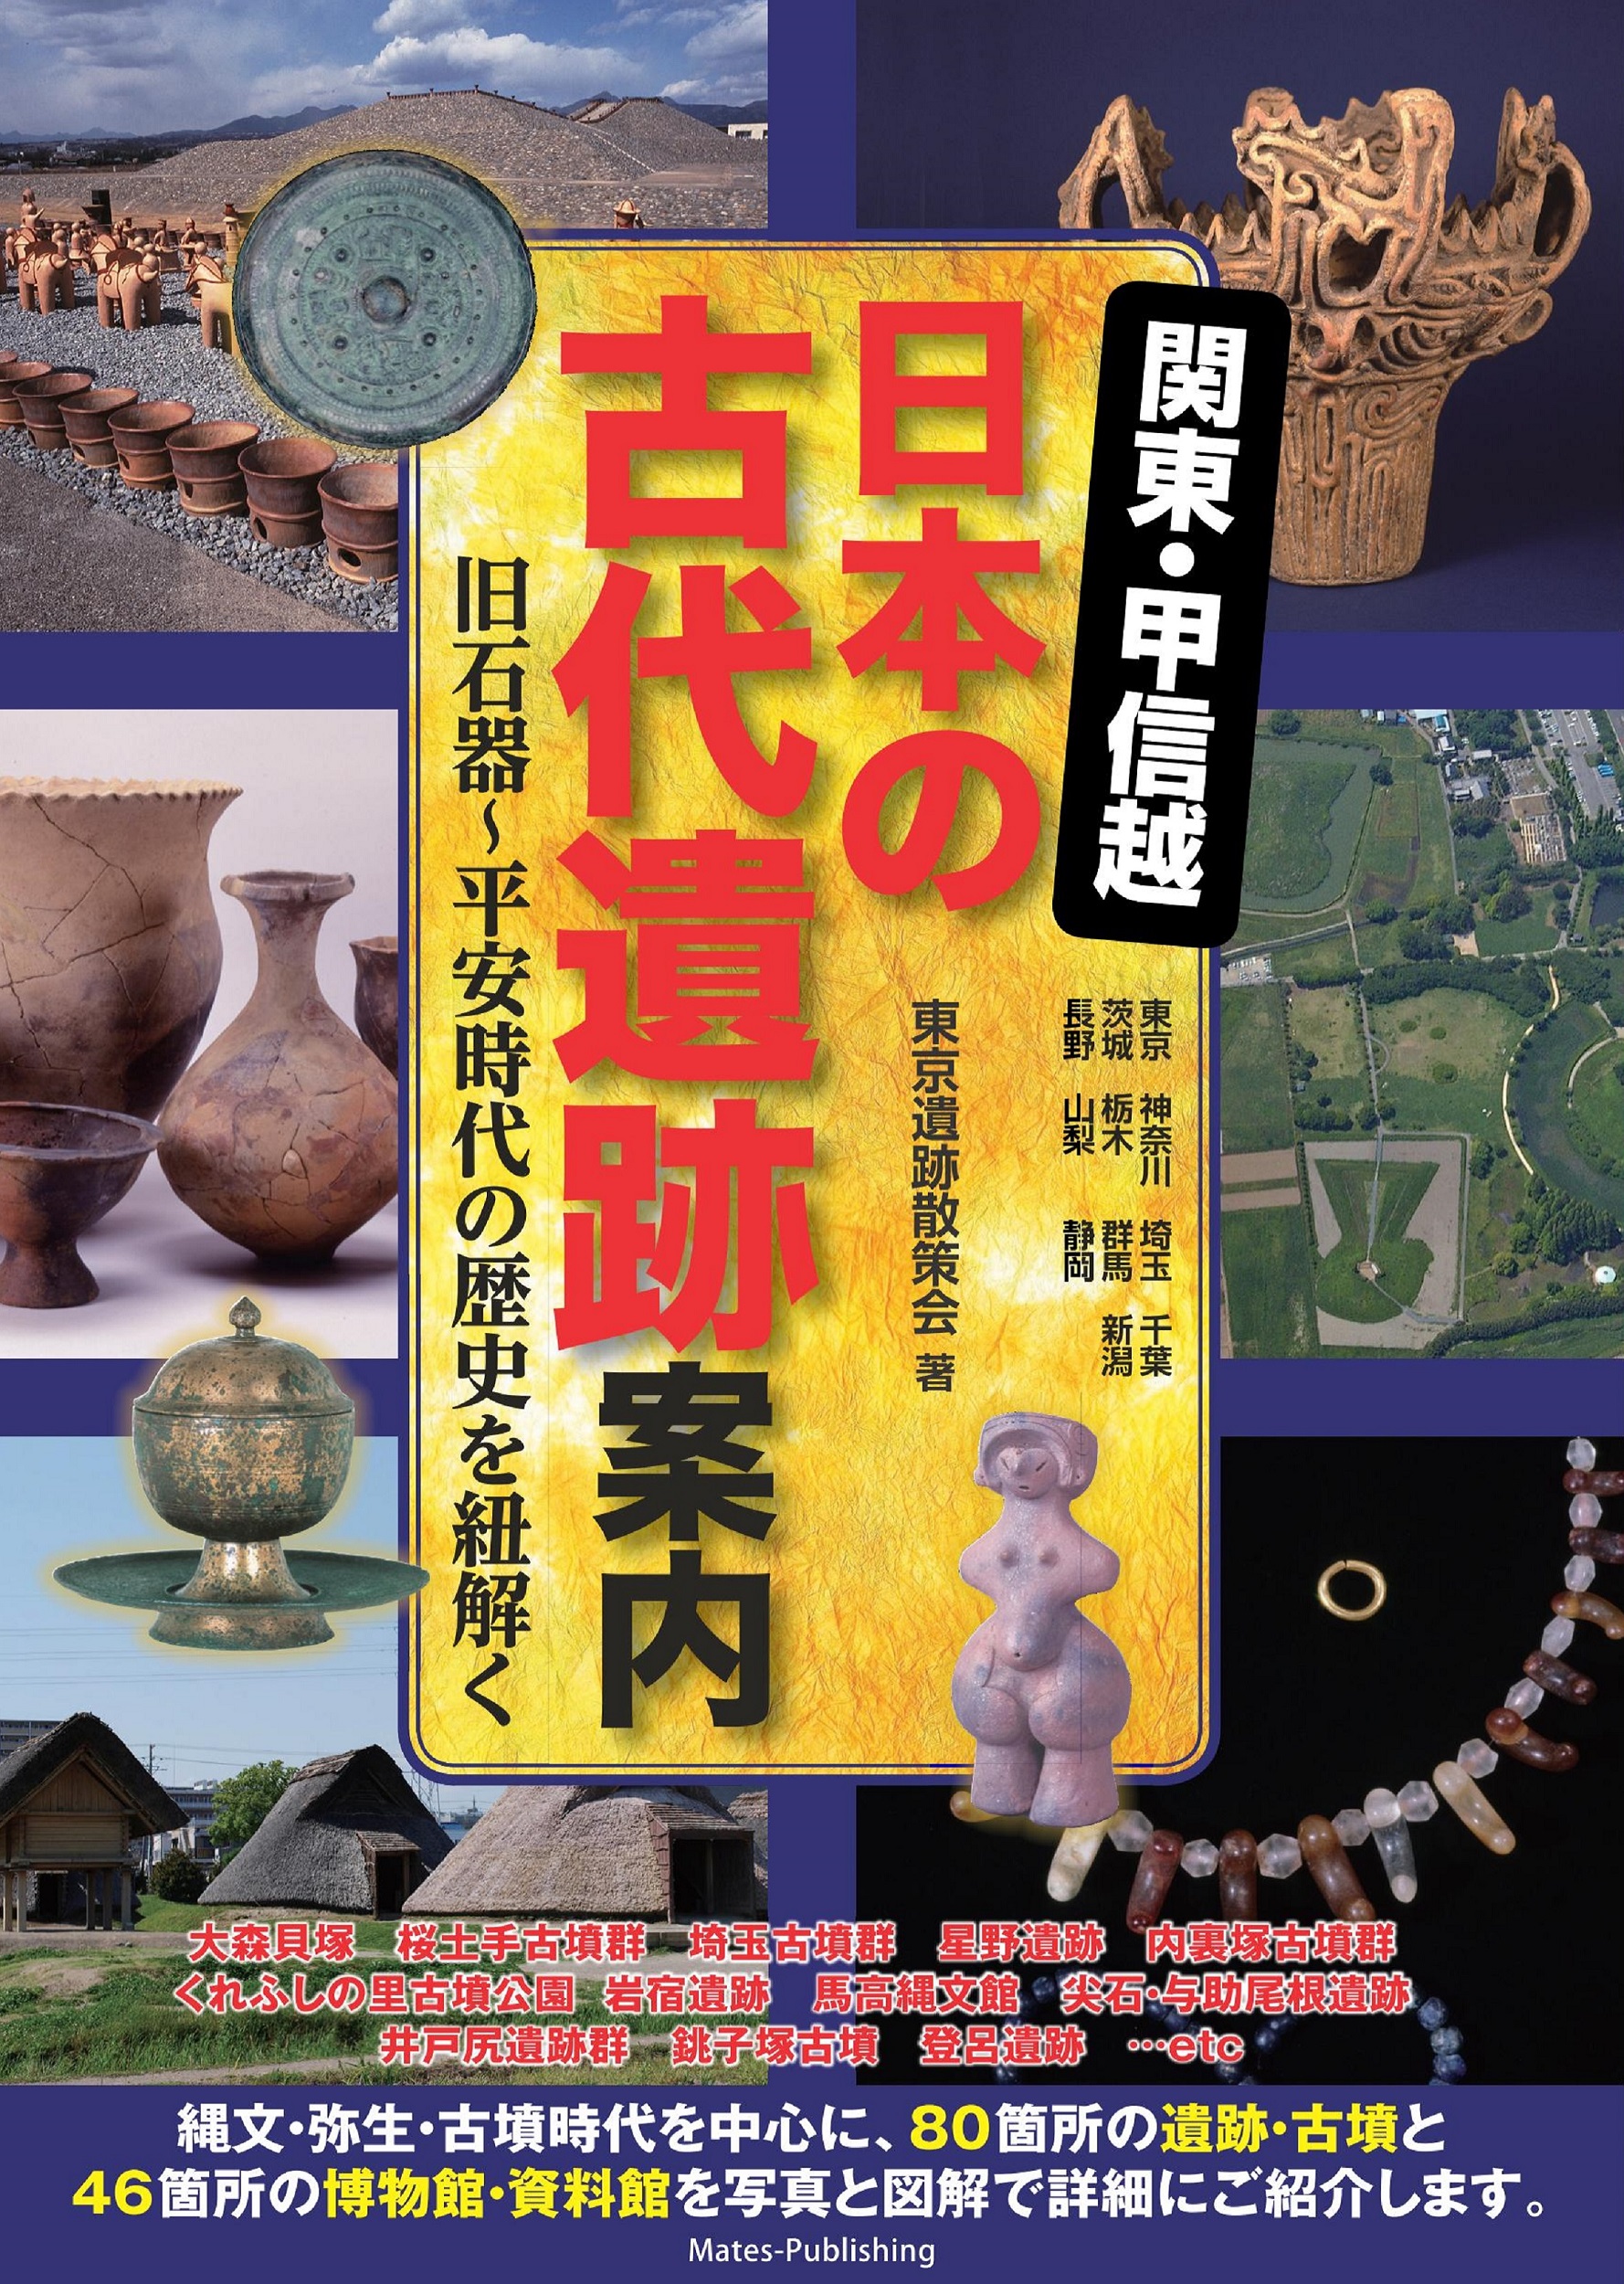 関東・甲信越 日本の古代遺跡案内 旧石器～平安時代の歴史を紐解くの商品画像